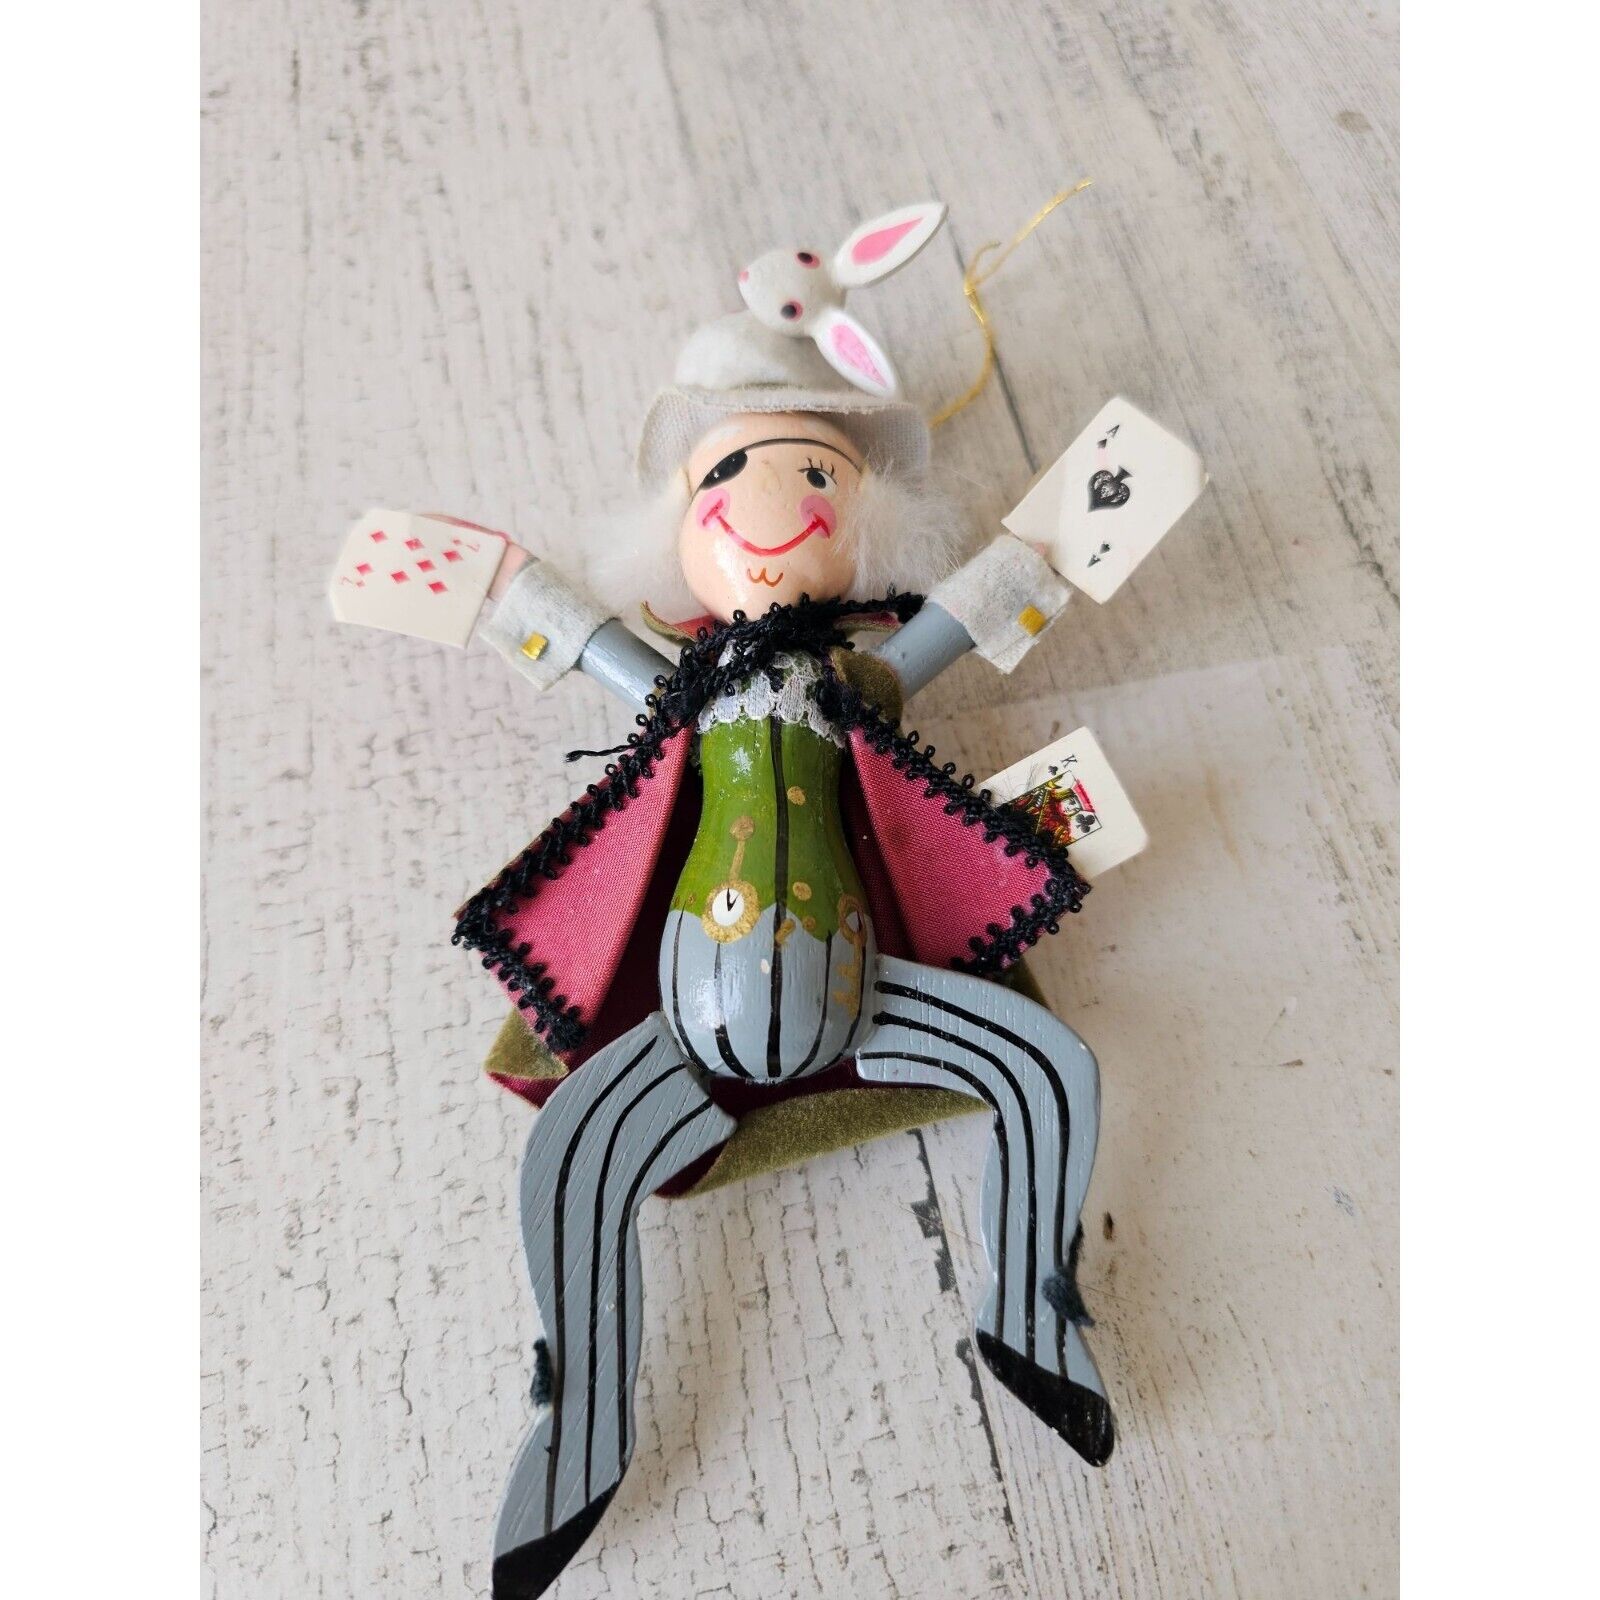 Vintage wooden Kurt Adler mad hatter Alice wonderland rabbit cards ornament magi